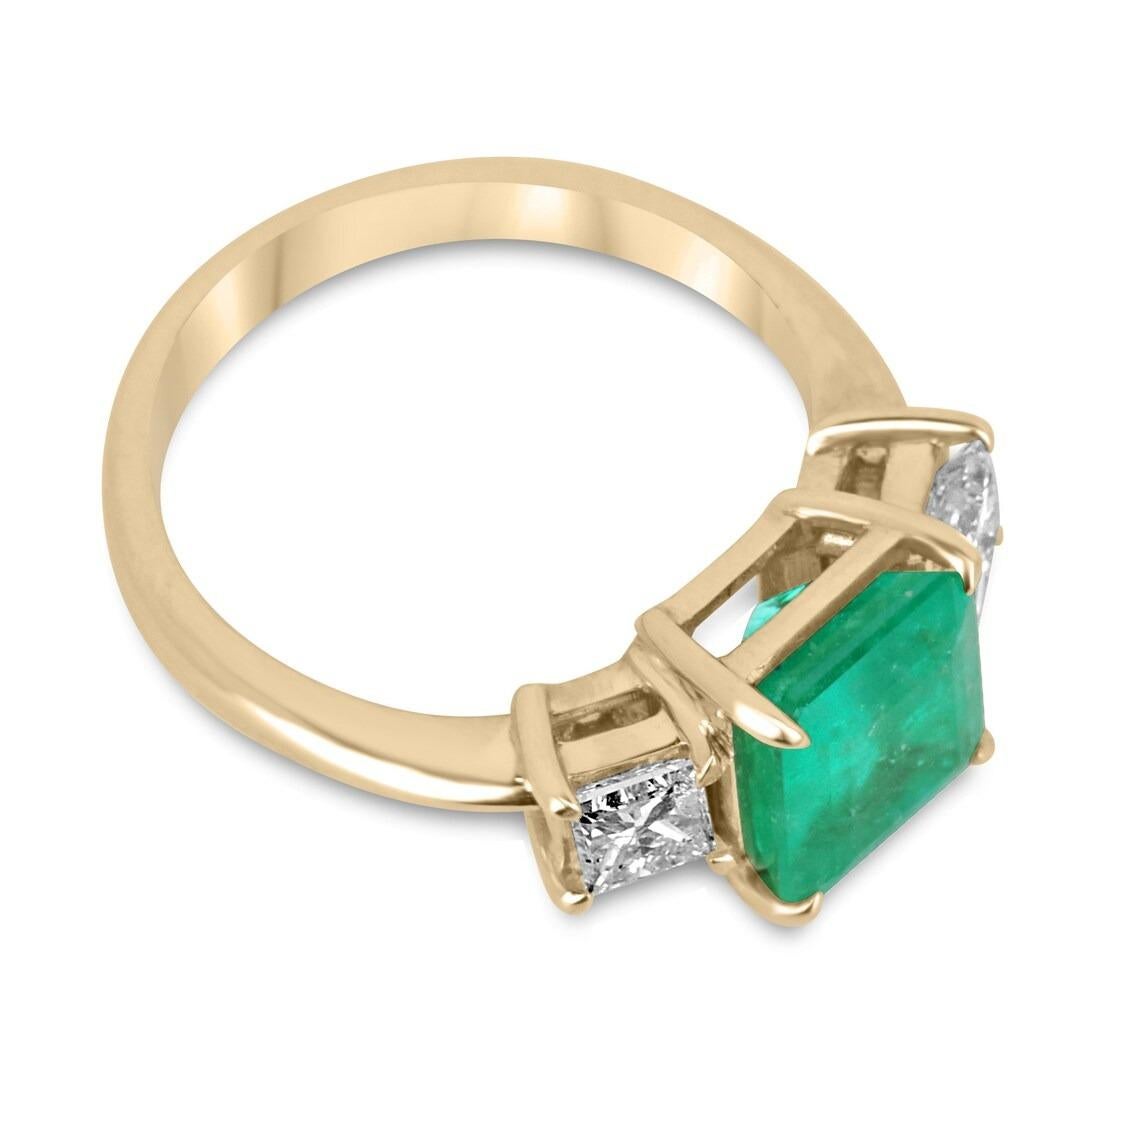 Lassen Sie sich von der zeitlosen Anziehungskraft kolumbianischer Smaragde und Diamanten mit diesem atemberaubenden Verlobungs-, Statement- oder Rechtshandring verführen. Dieses fachmännisch in Handarbeit aus glänzendem 14-karätigem Gold gefertigte